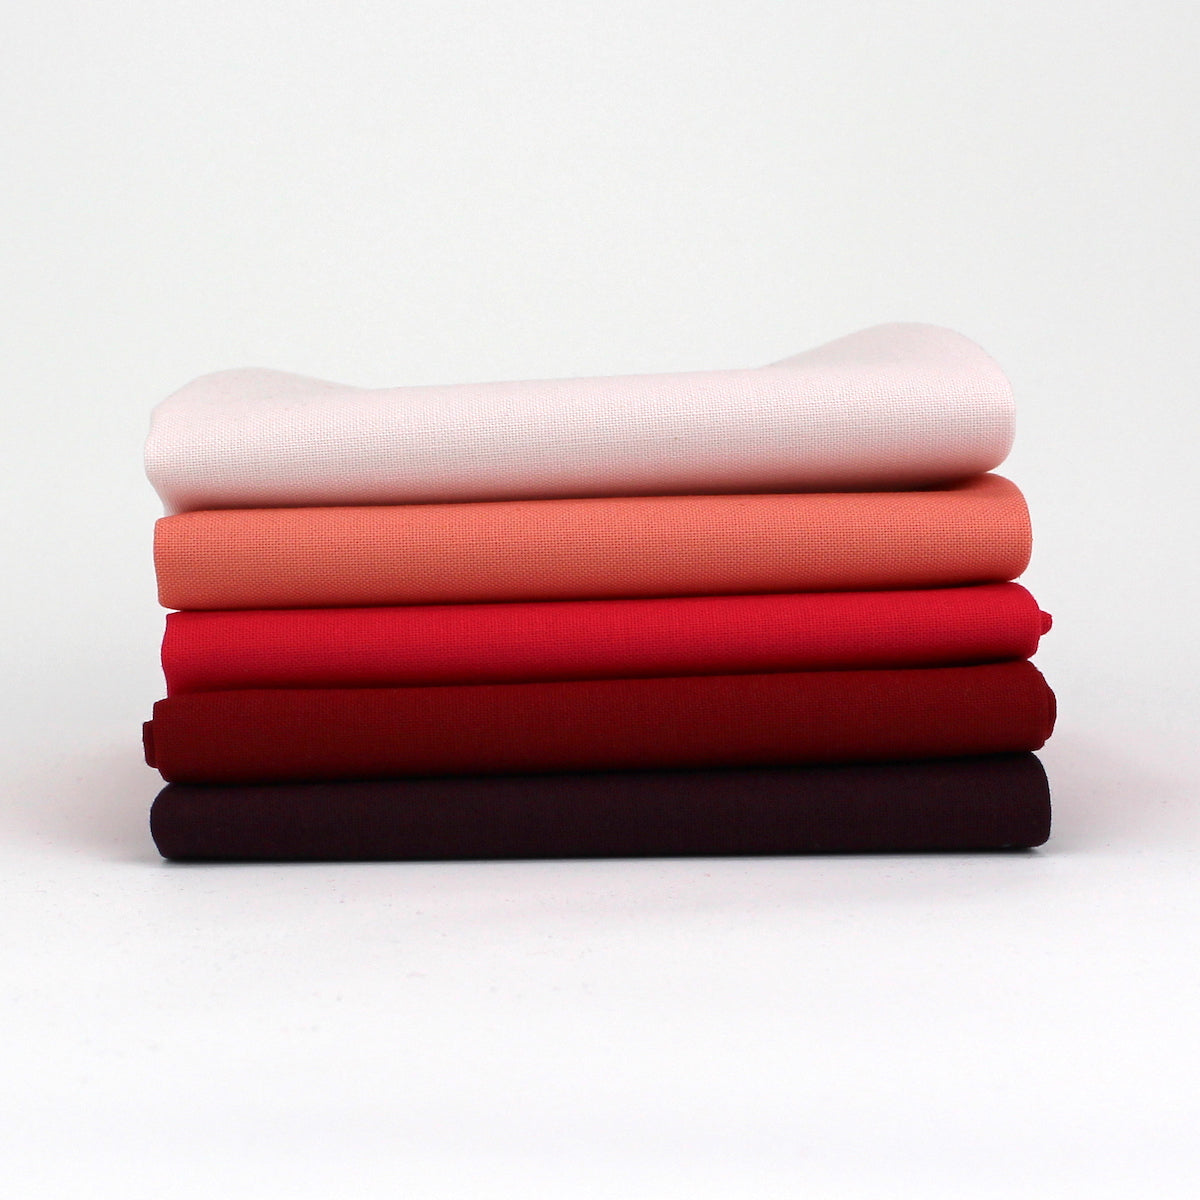 Red Magenta 5 Kona Cotton Fat Quarter Bundle - Sewfinity.com